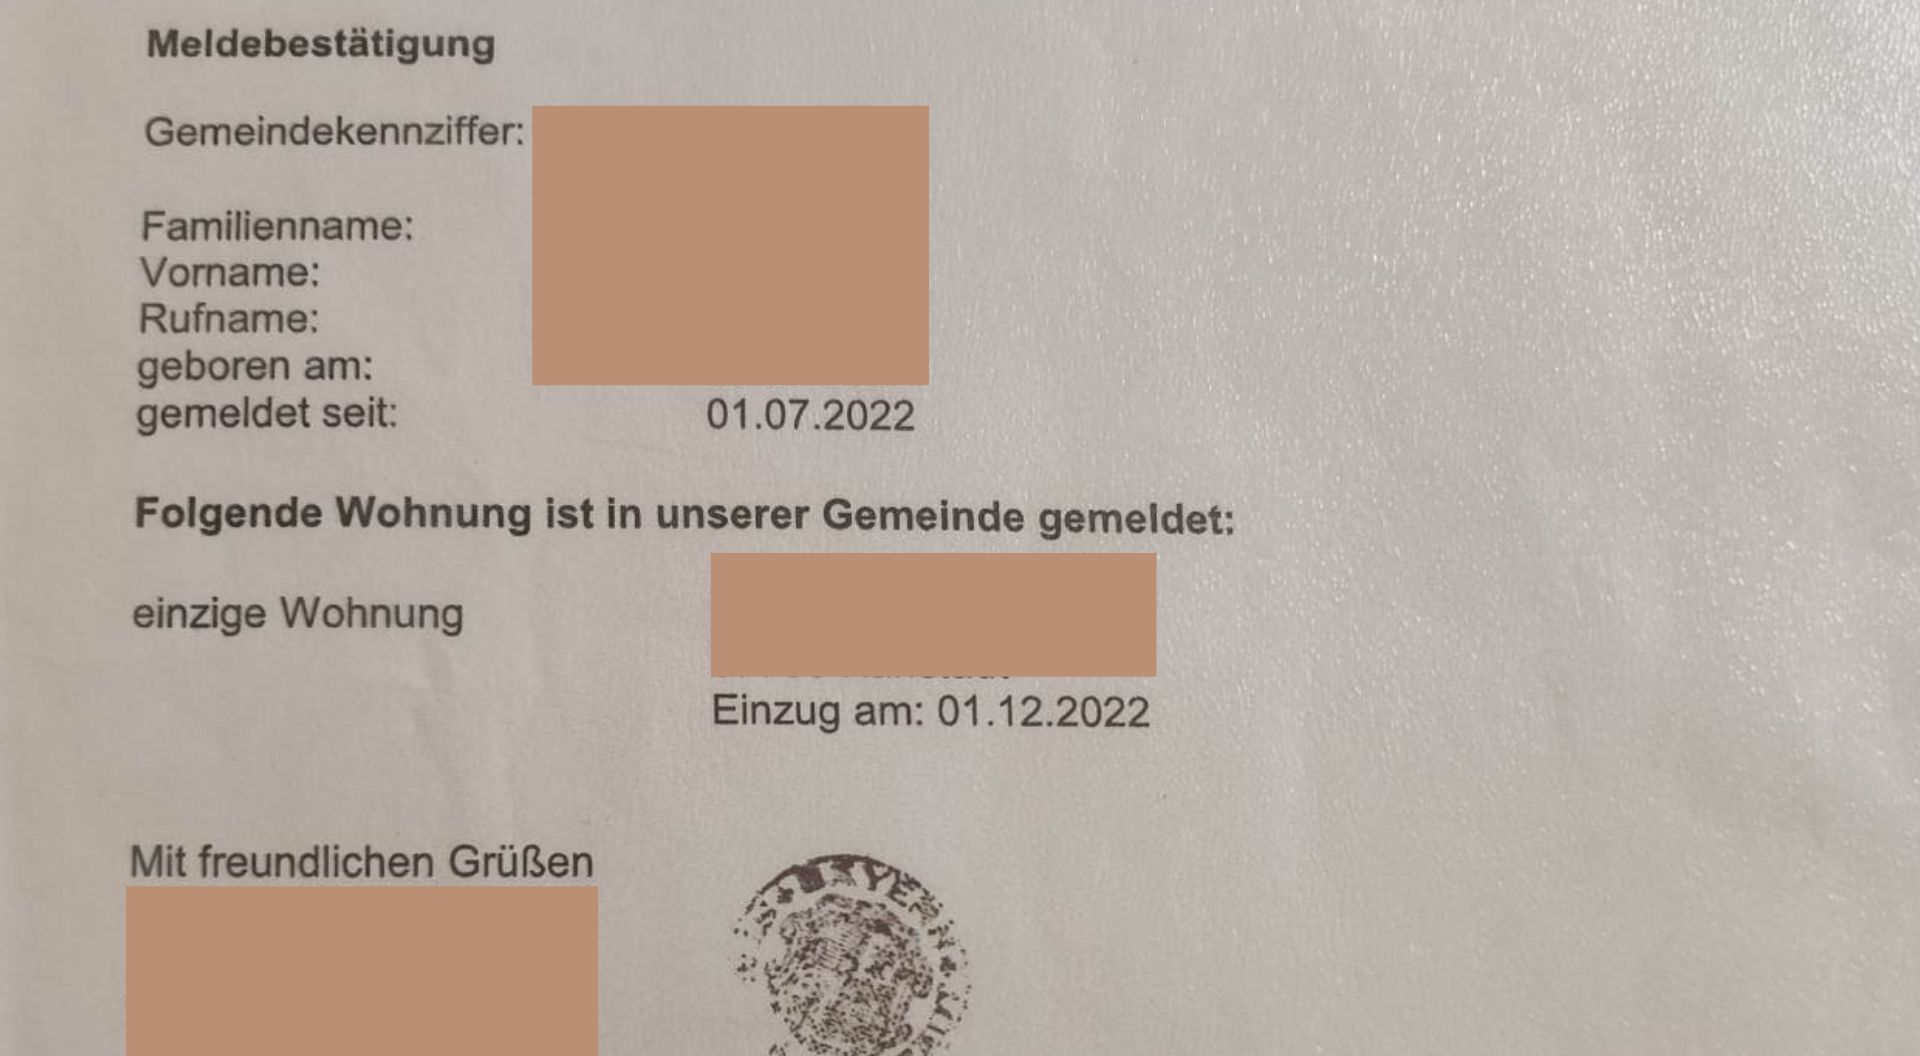 Реєстрація місця проживання у Німеччині: що треба знати?